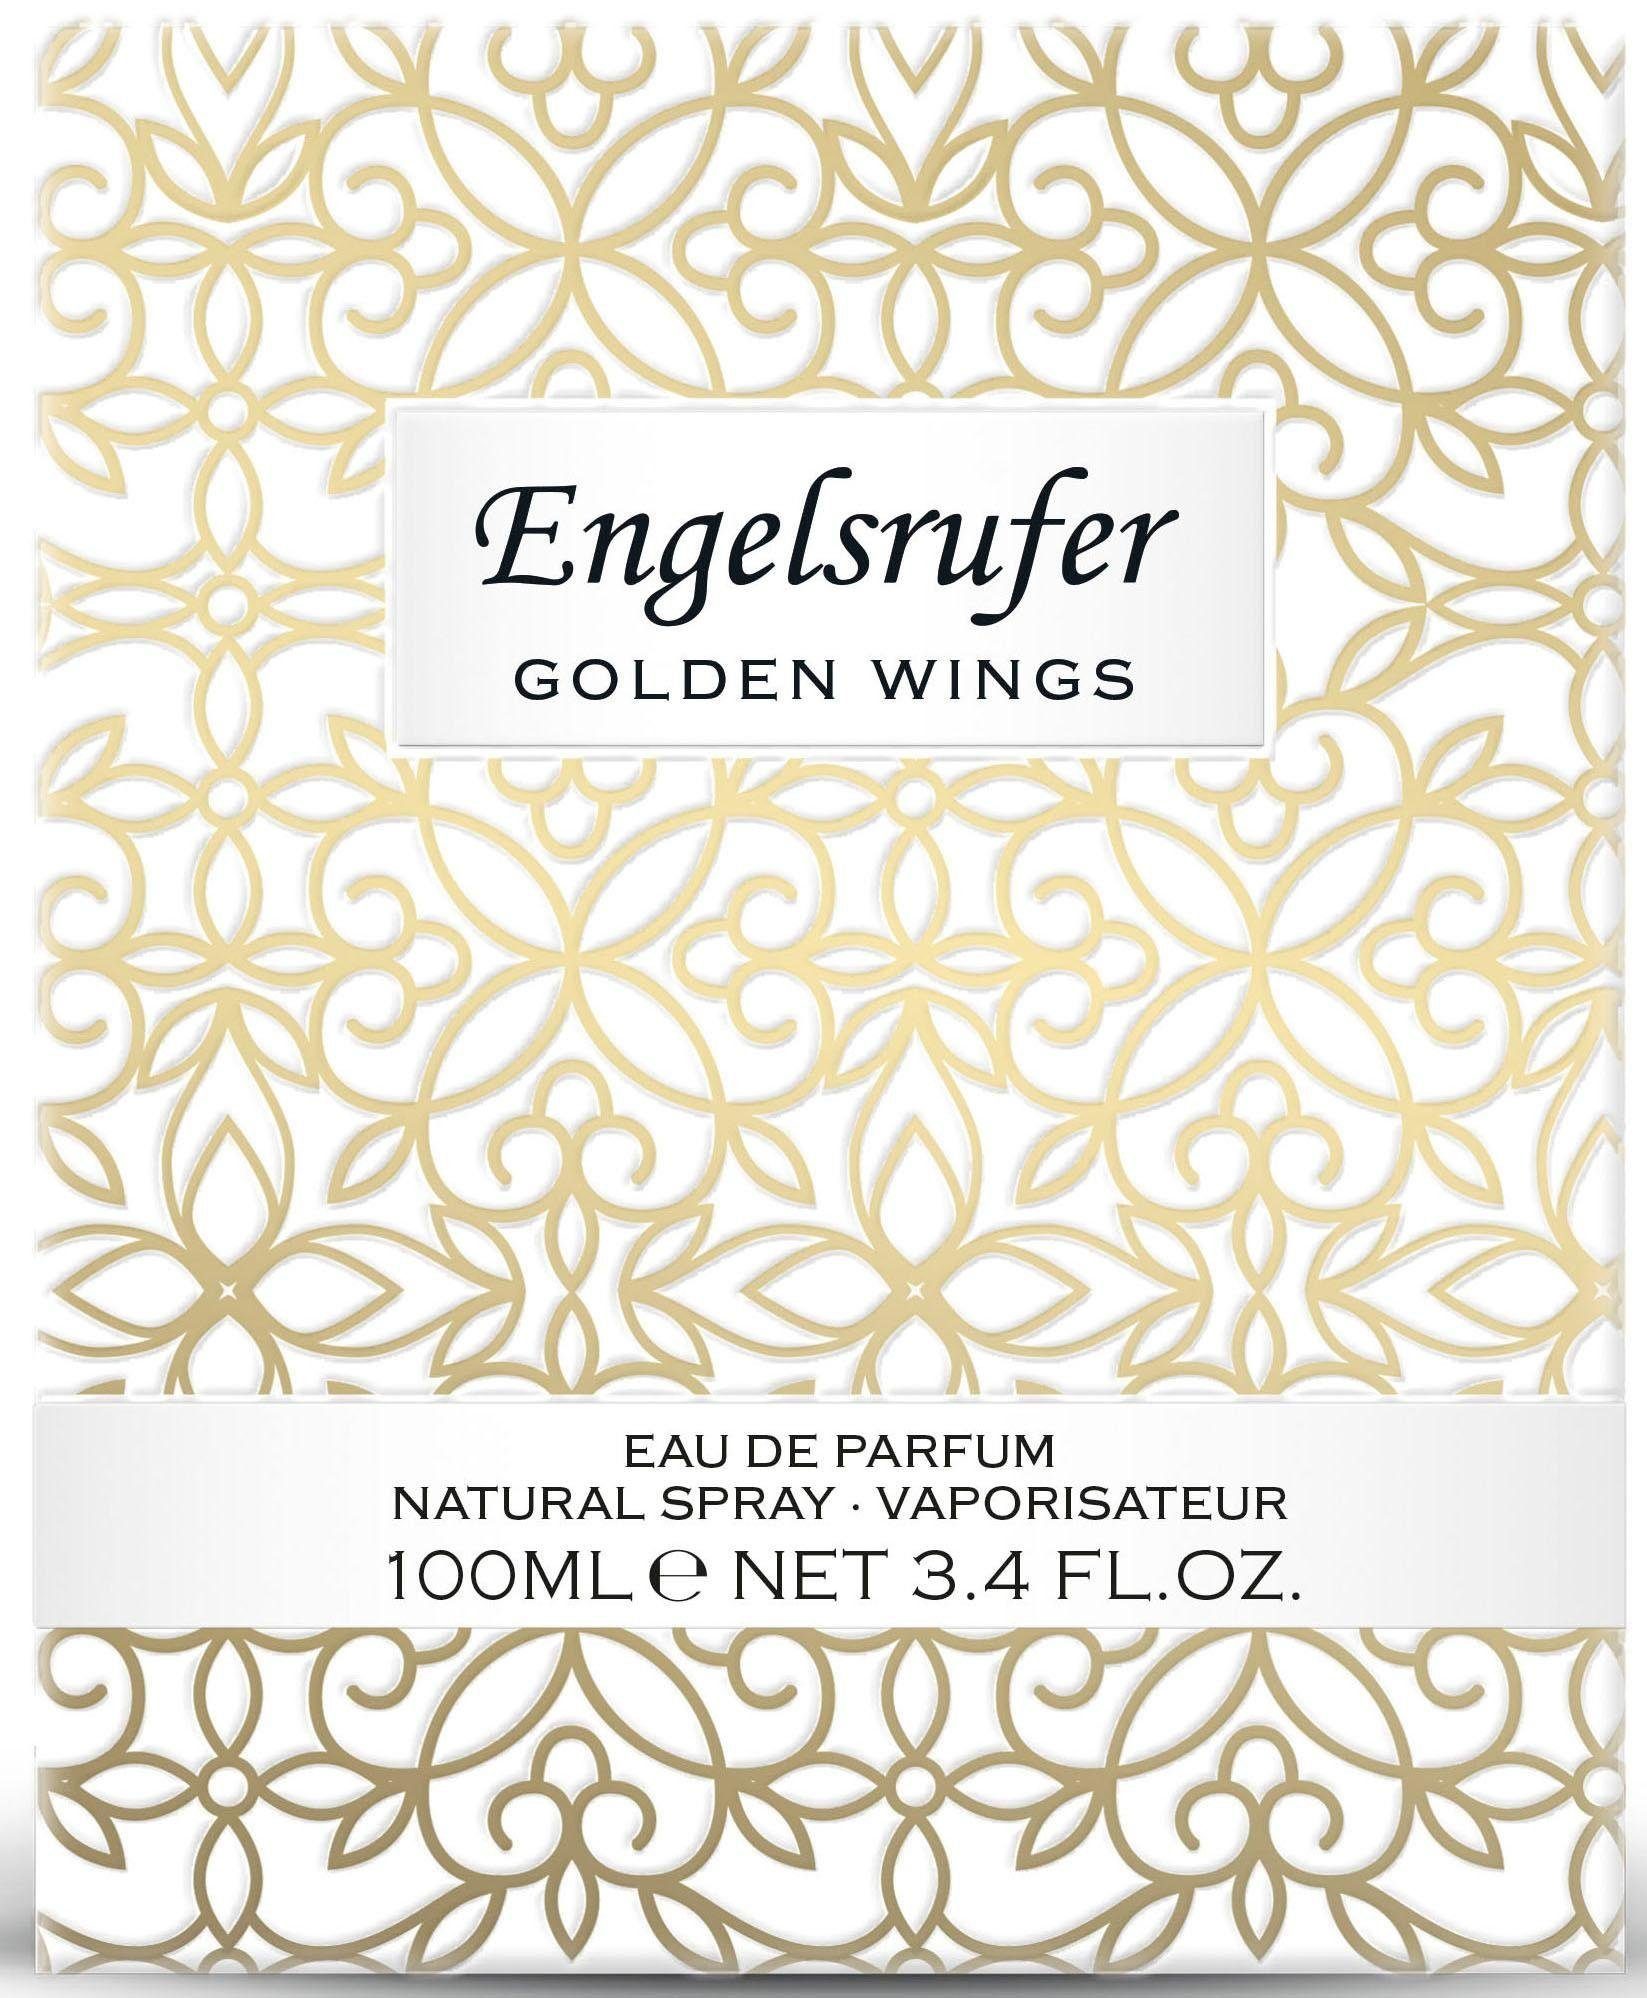 Engelsrufer Eau de Parfum Wings Golden